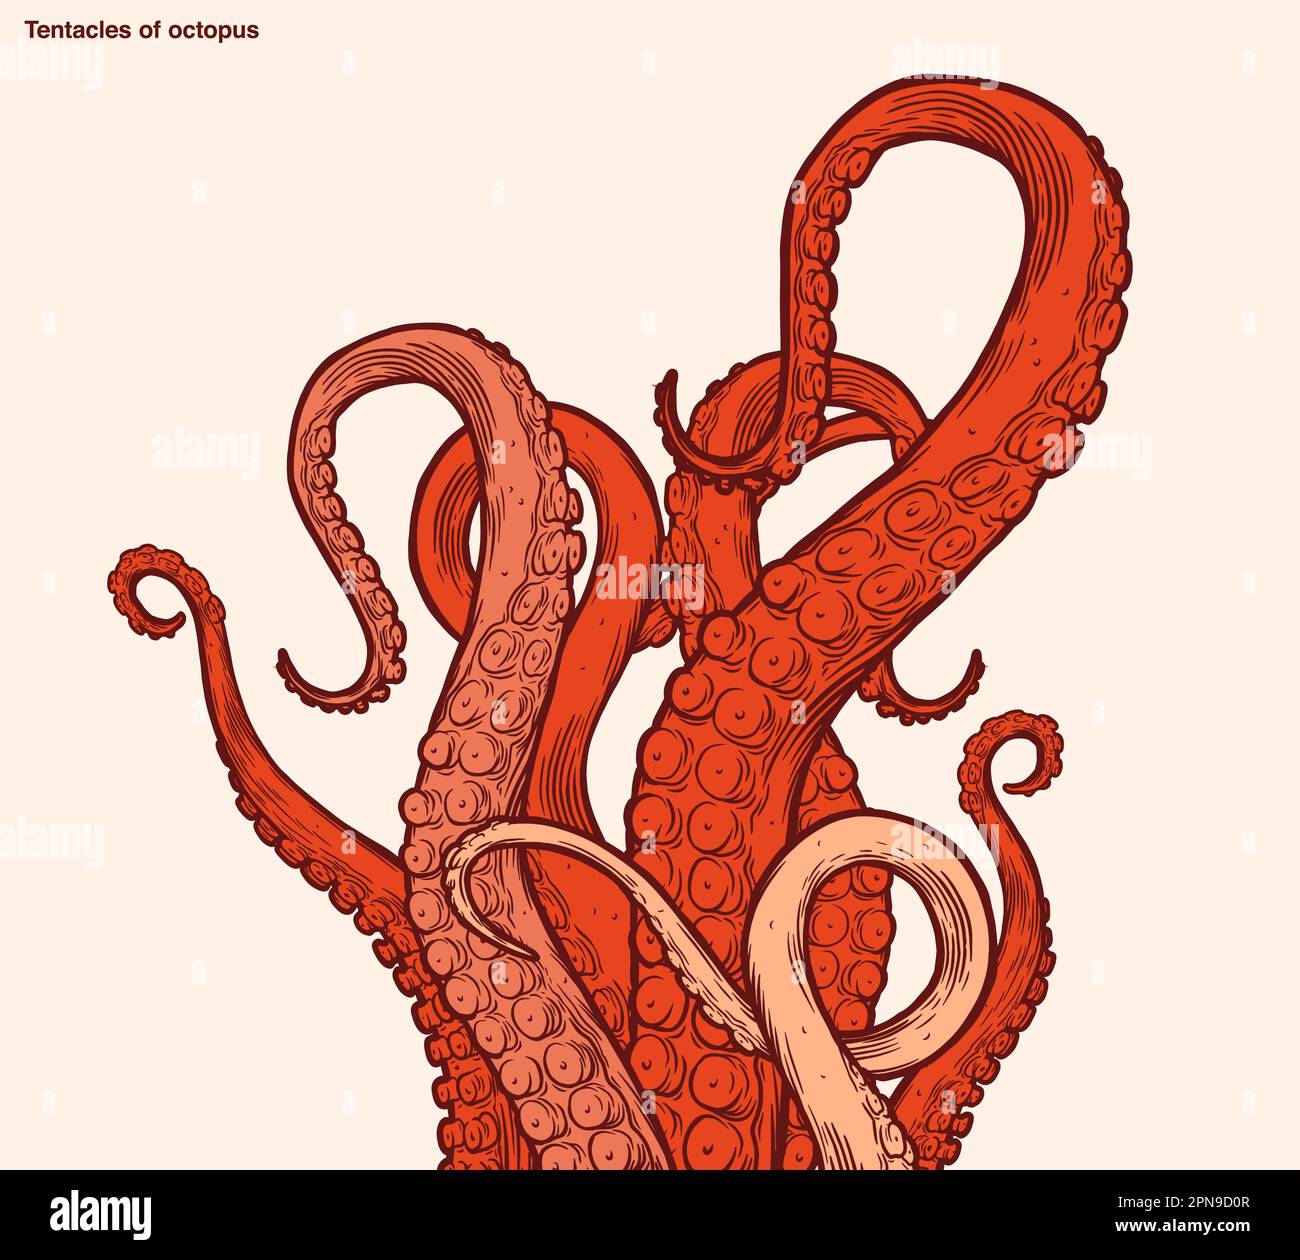 Tentacoli di polipo rosso che raggiungono l'alto, parti del corpo di animali marini simili a calamari che sporgono dalla cornice, tagliate per la progettazione di alimenti o cornici, disegni di cartoni animati Illustrazione Vettoriale